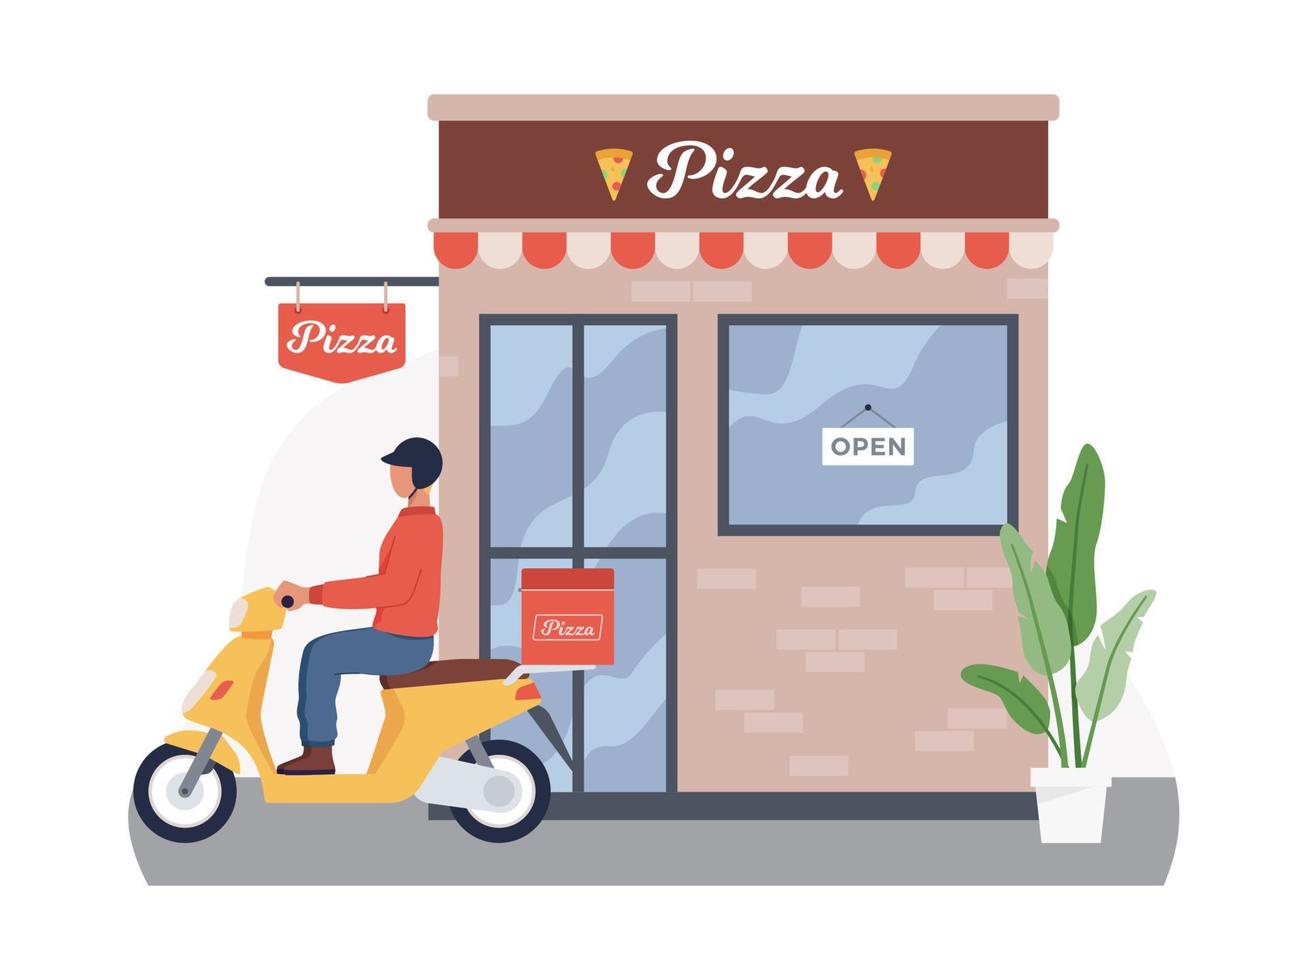 bezorger bezorgt pizzabestellingen op scooter vector